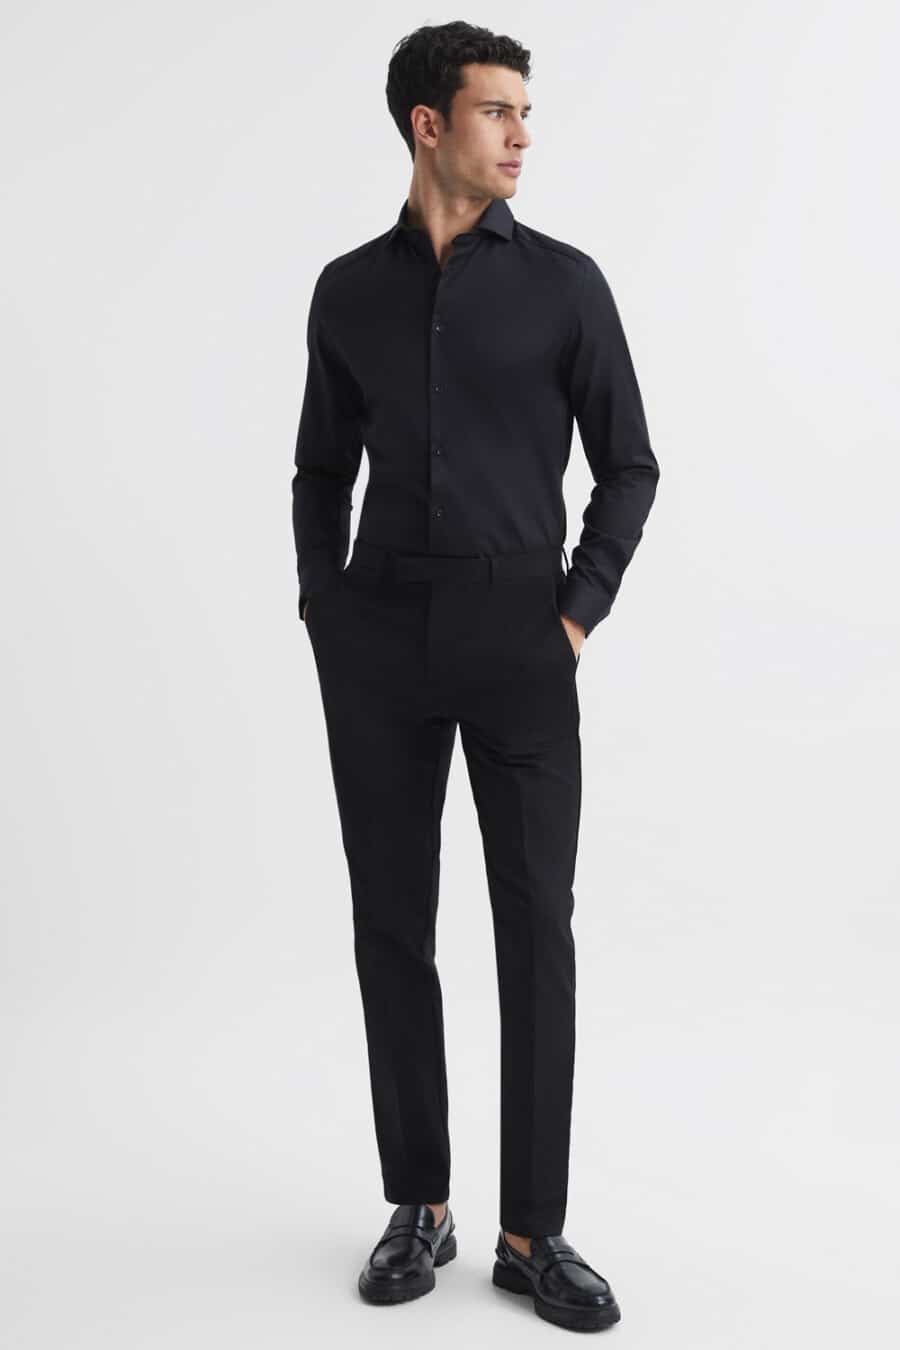 Black Shirt Grey Trouser Combo For Men - Evilato-hangkhonggiare.com.vn